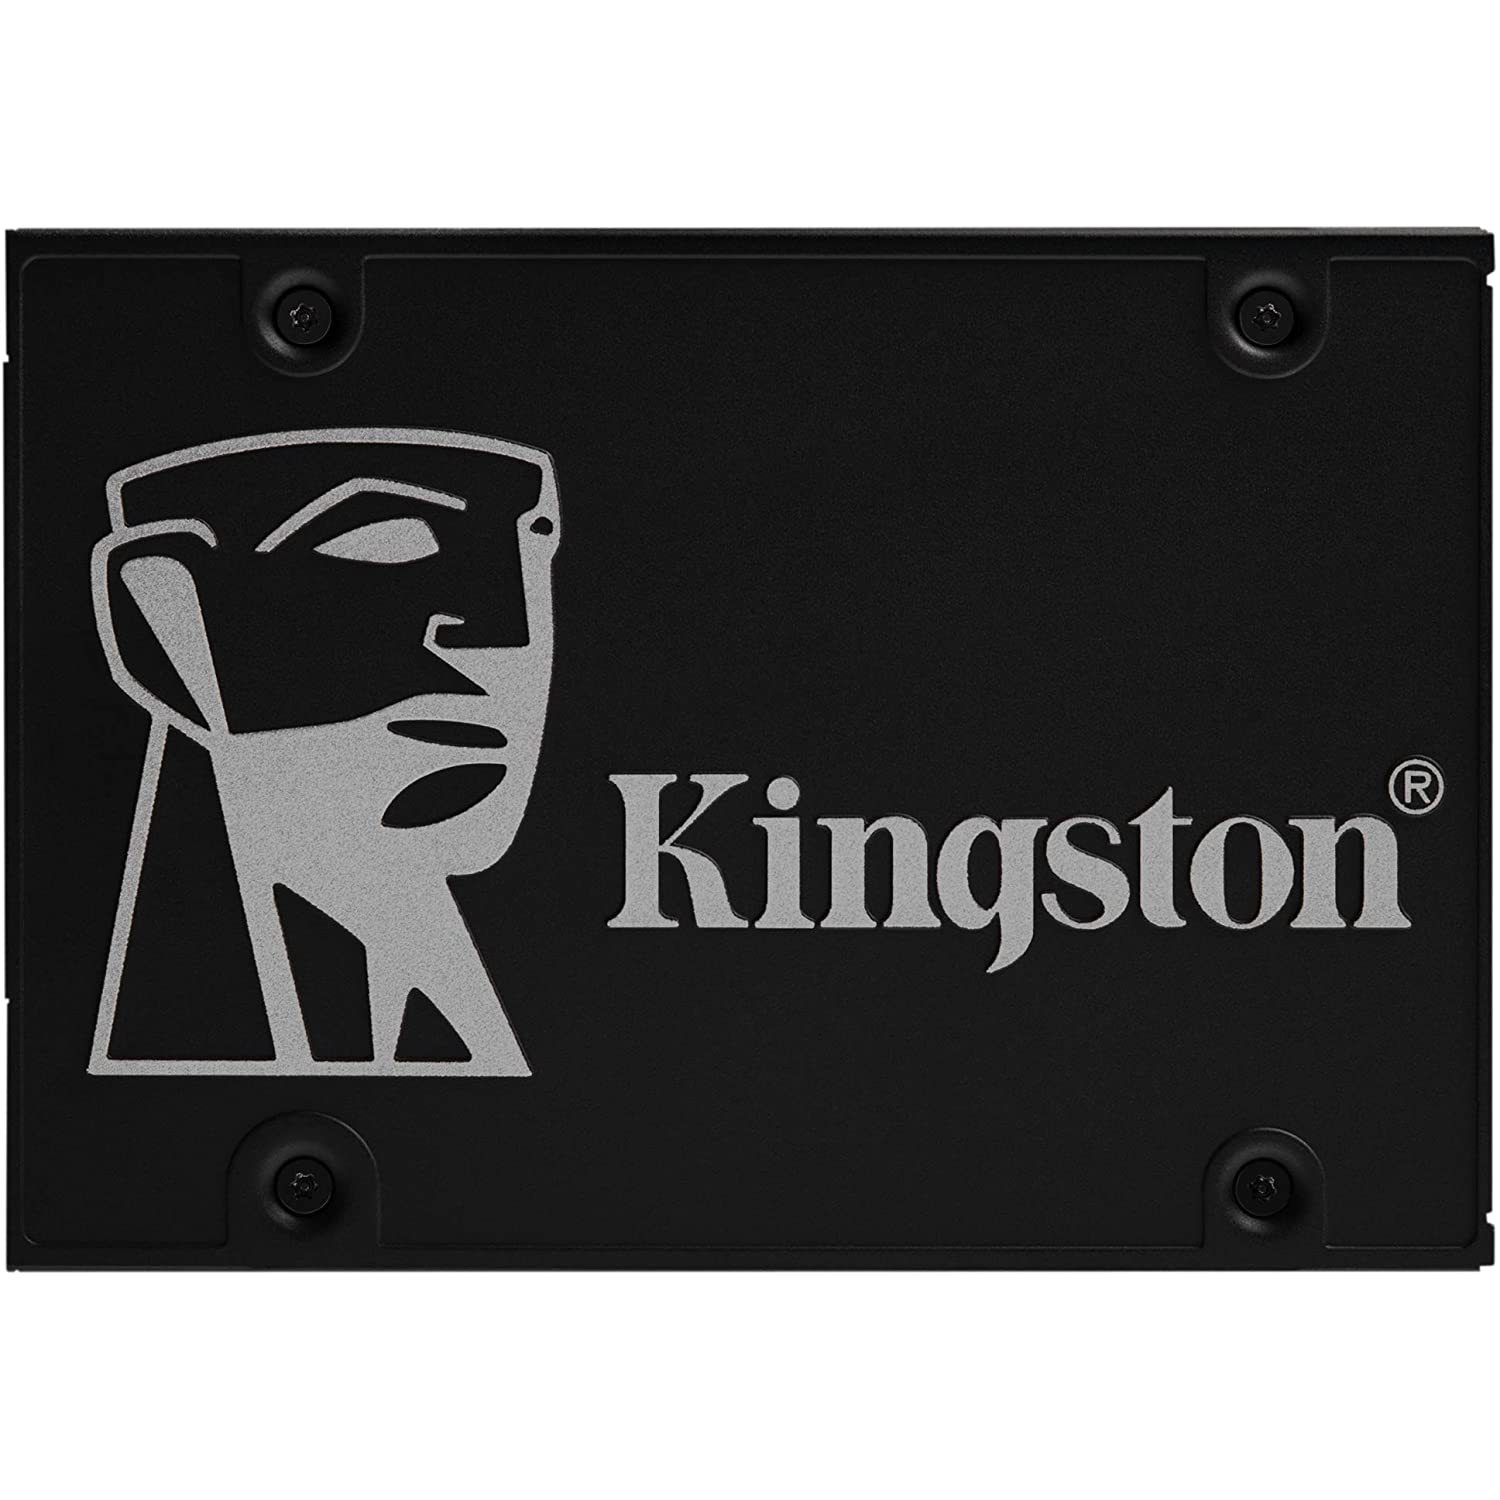 KINGSTON 512G SSD KC600 SATA3 2.5 BUNDLE (SKC600B/512G)